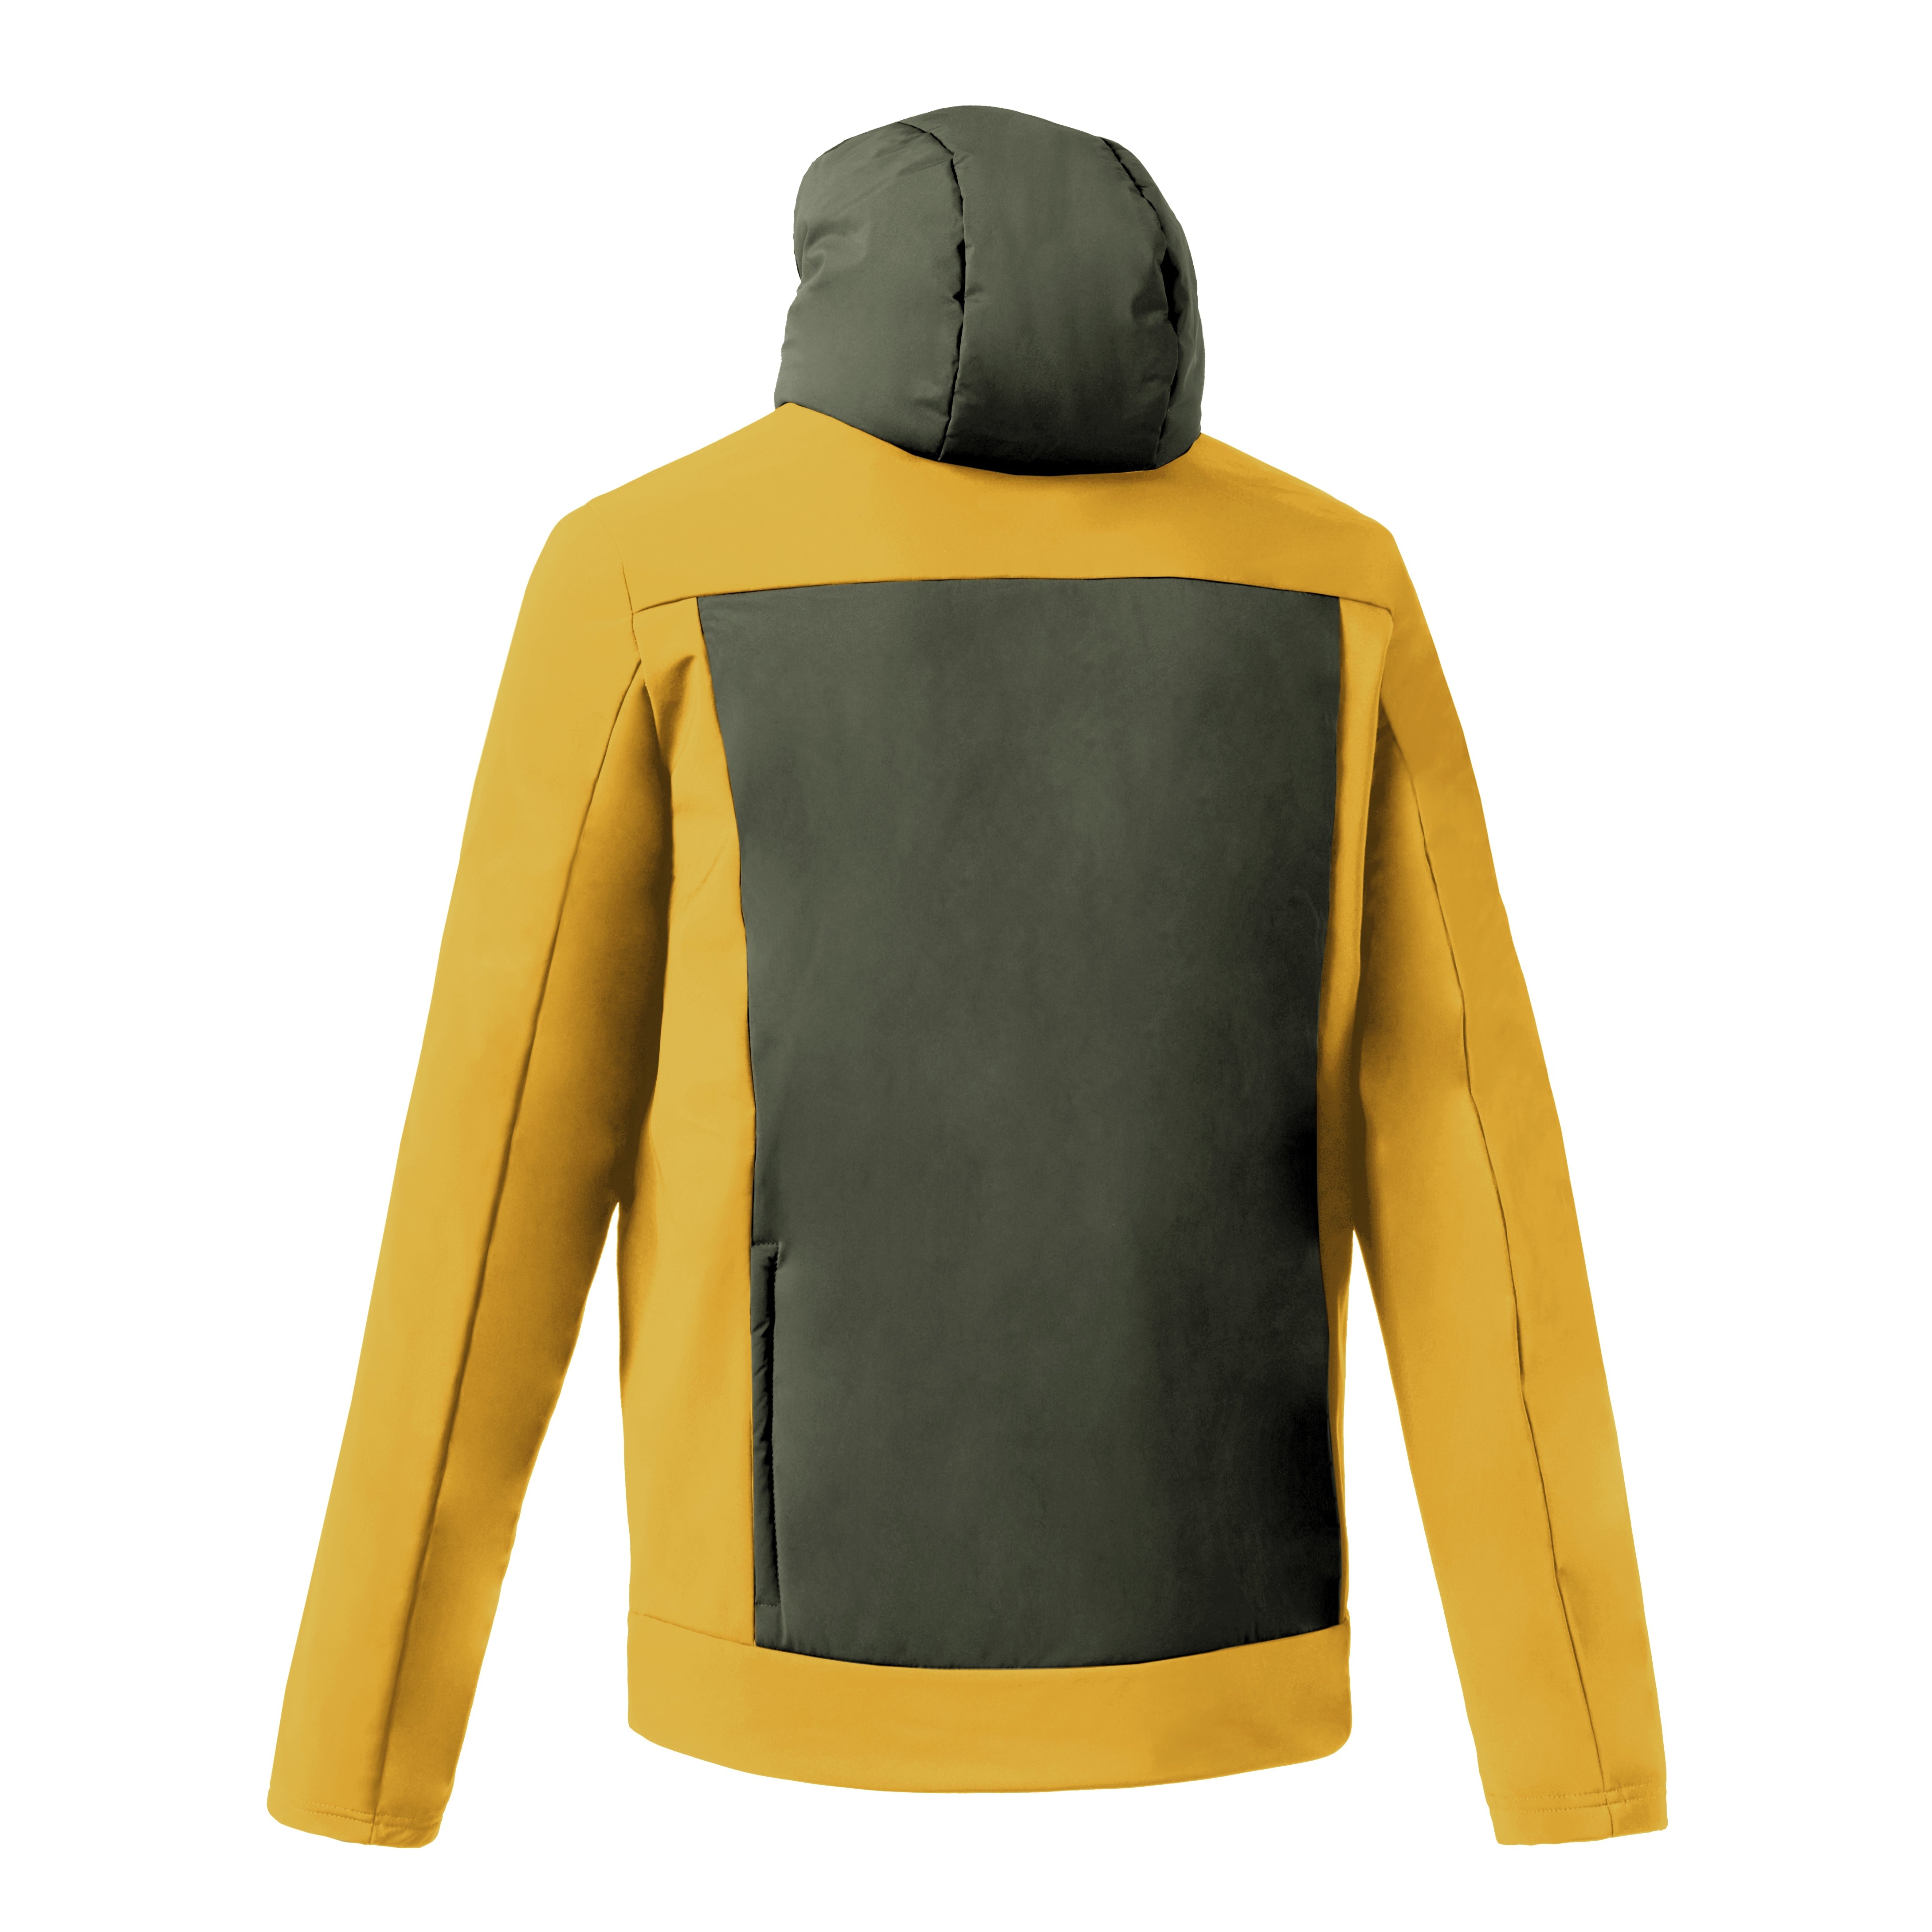 Dotout Altitude jacket - Green yellow